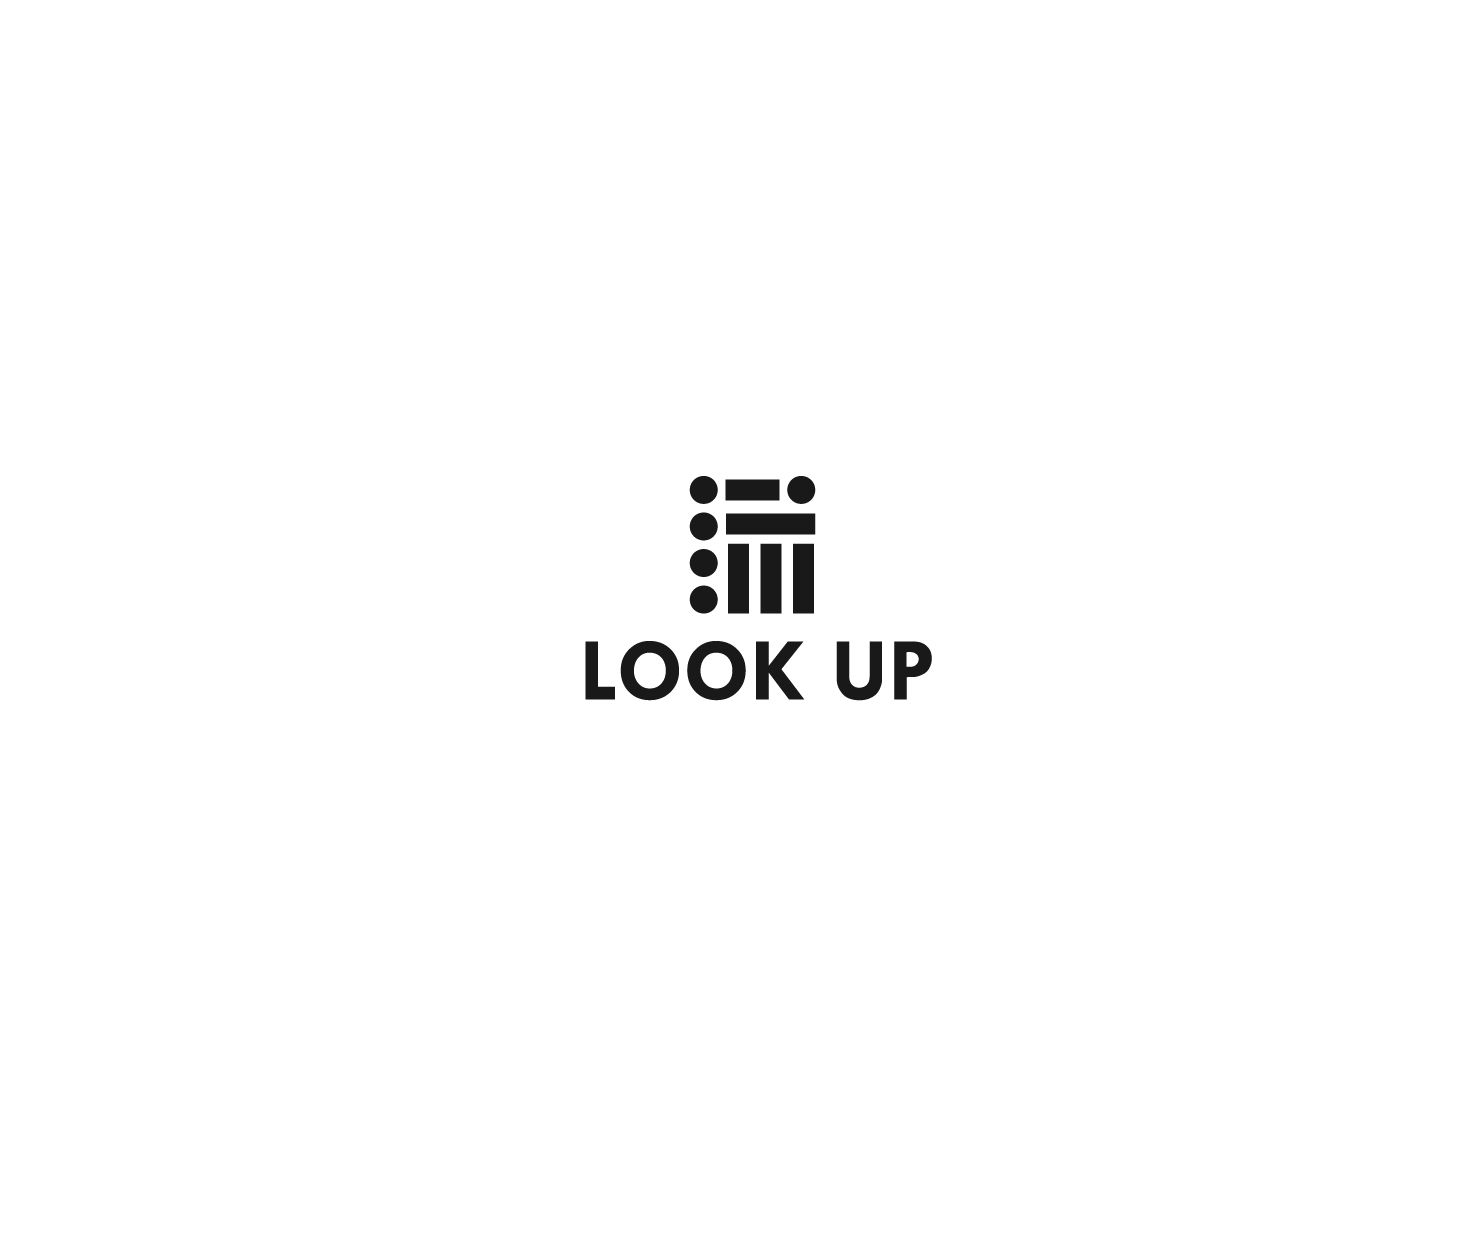 Логотип для Look Up - дизайнер andrich28